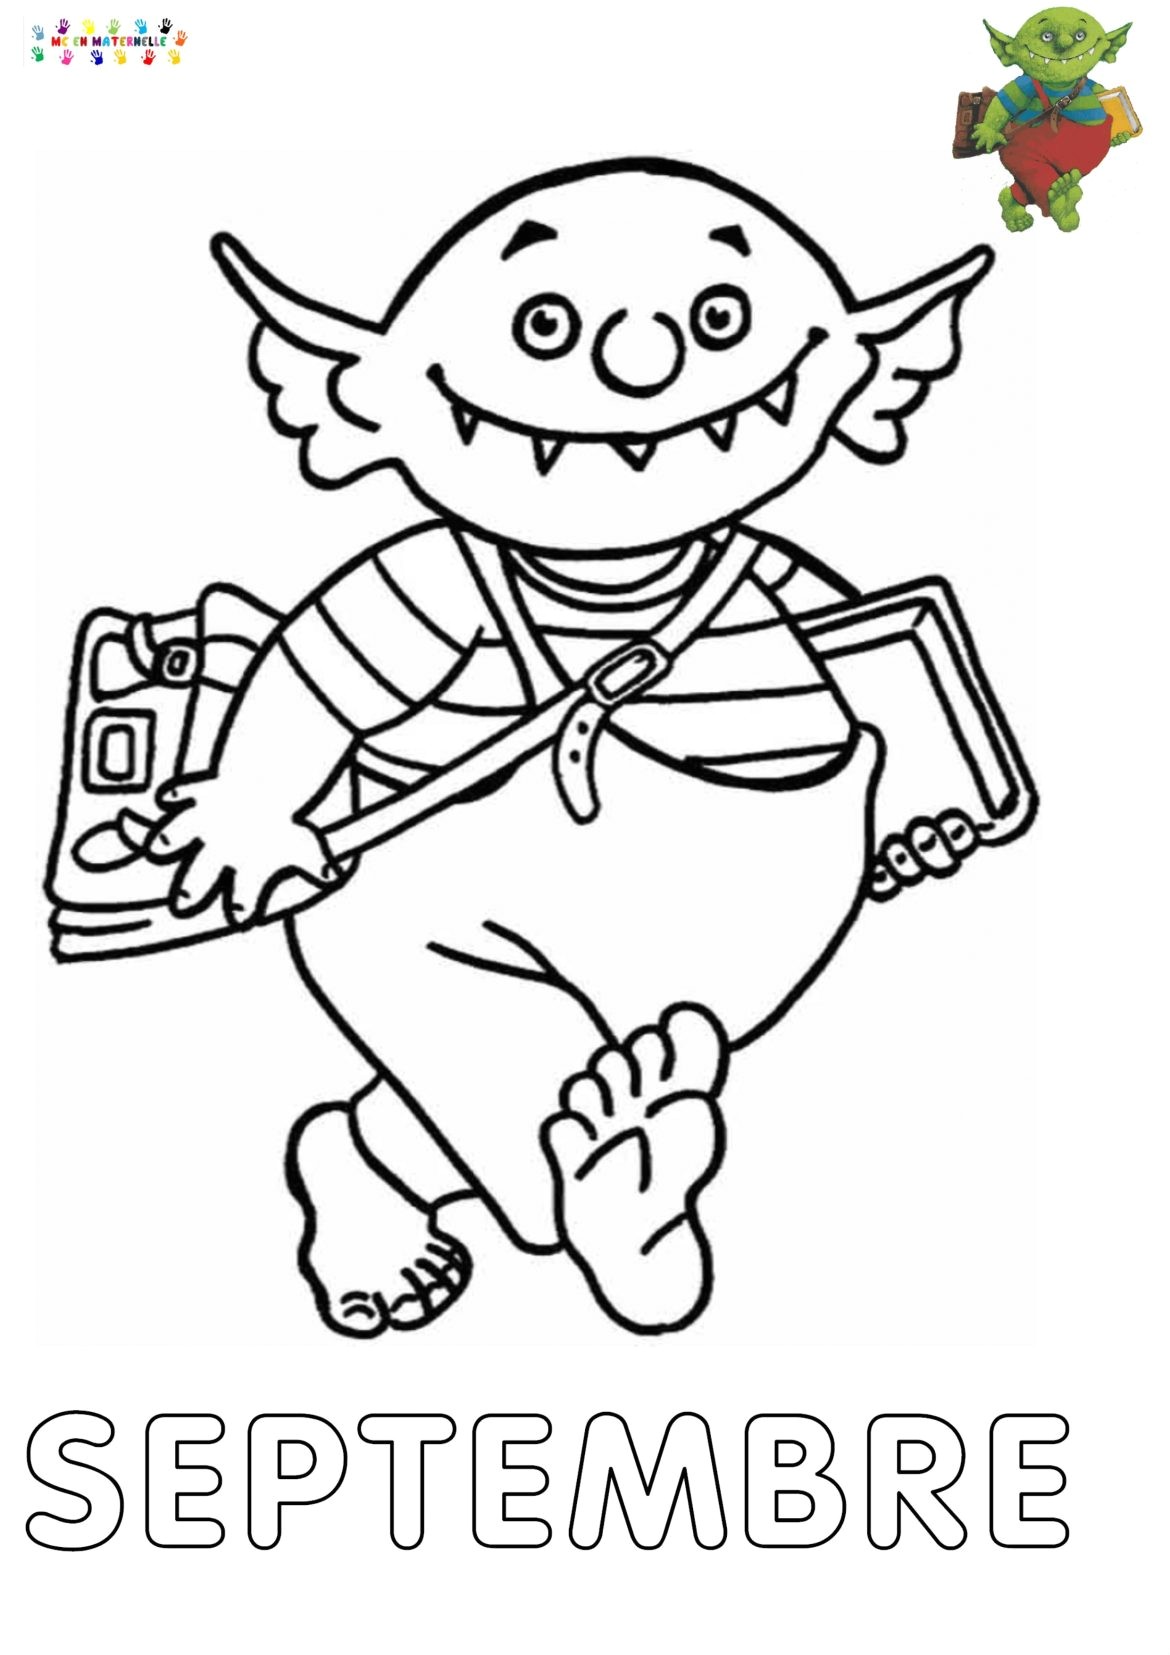 Le petit ogre qui veut aller   l école Mois de Septembre pour le cahier des travaux Page   colorier peindre décorer L image de l ogre vient de chez la